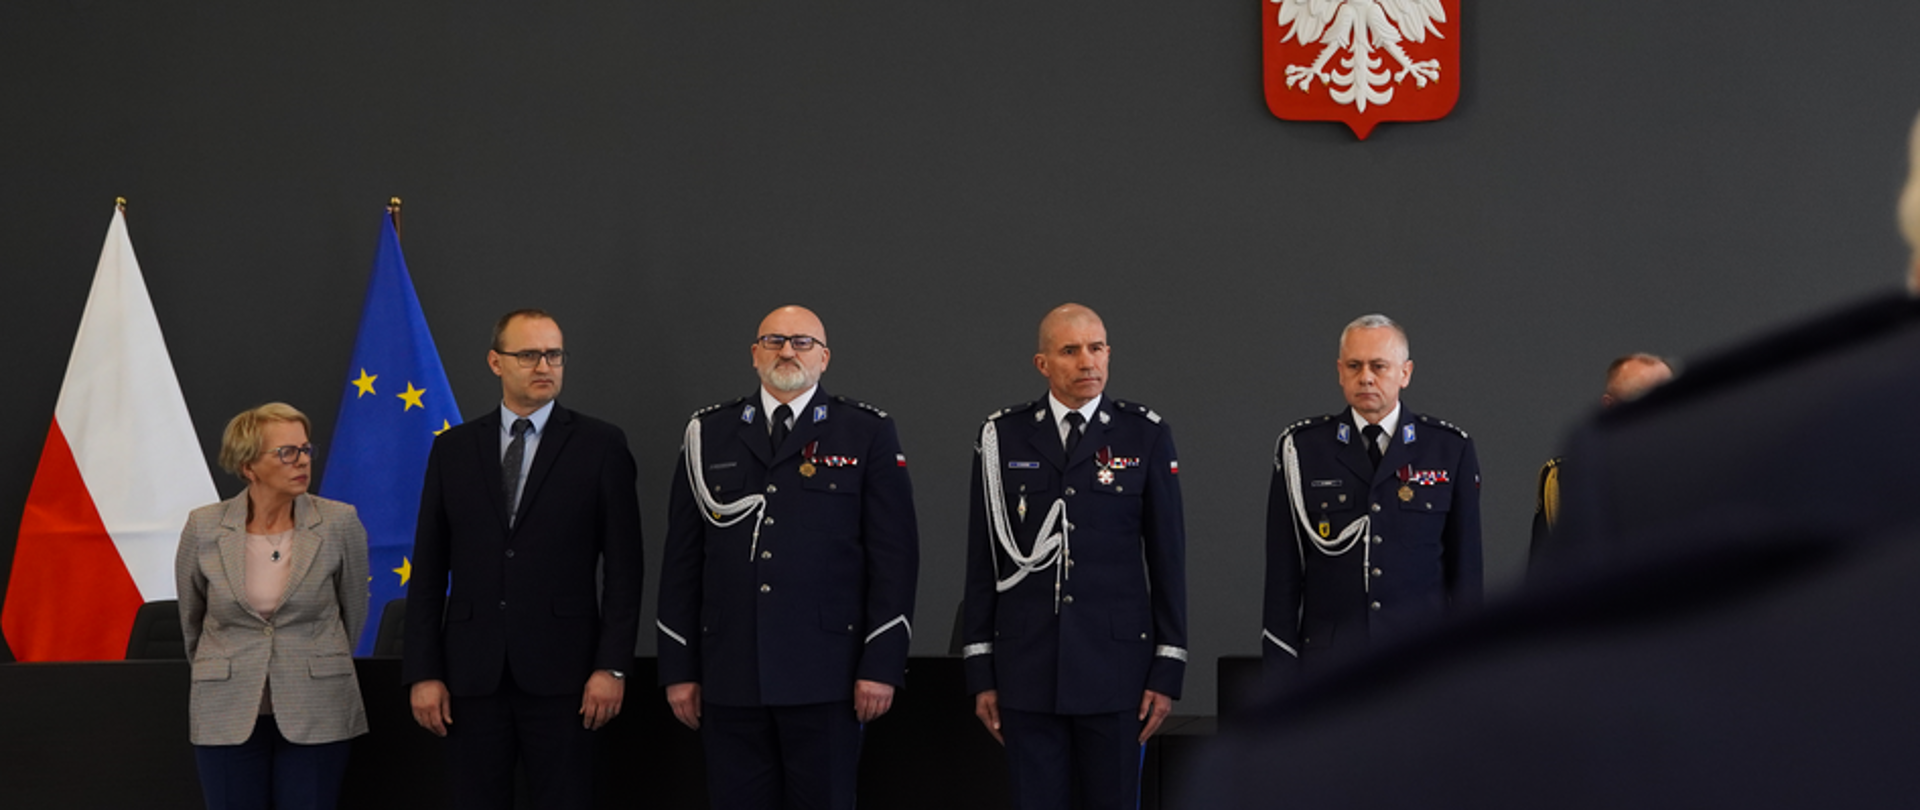 grupa mężczyzn w mundurach Policji , mężczyzna w garniturze i kobieta stoją przy ścianie na której wisi godło Polski. 